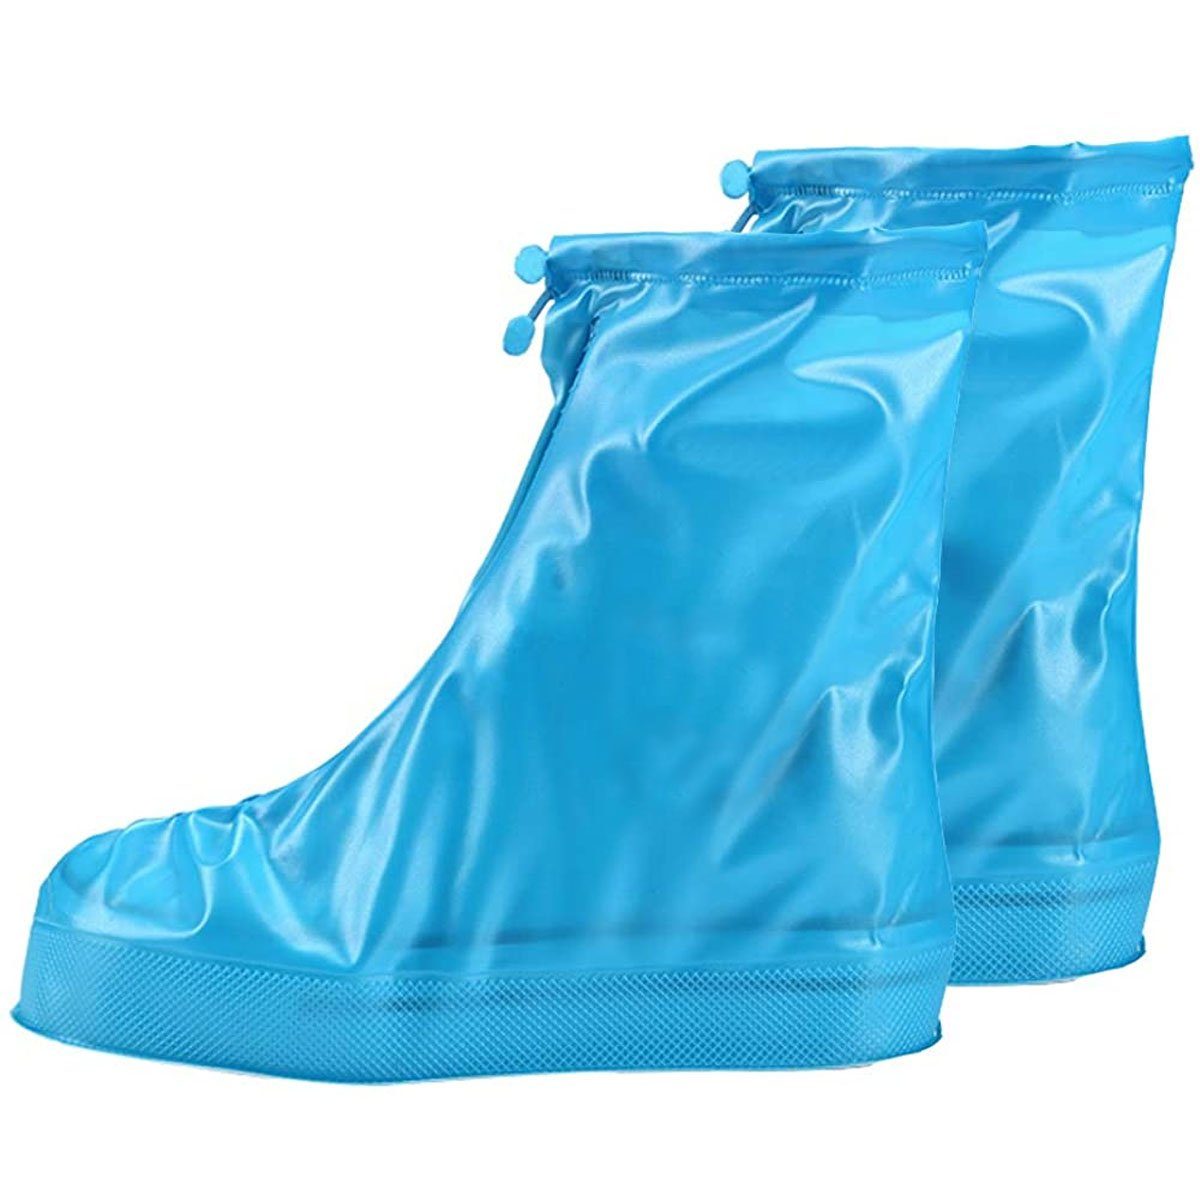 Lieferung zu einem supergünstigen Preis! ZmdecQna Schuhüberzieher Regenschutz Regen Schuhe,verstärkter Spitze,wasserdicht blau